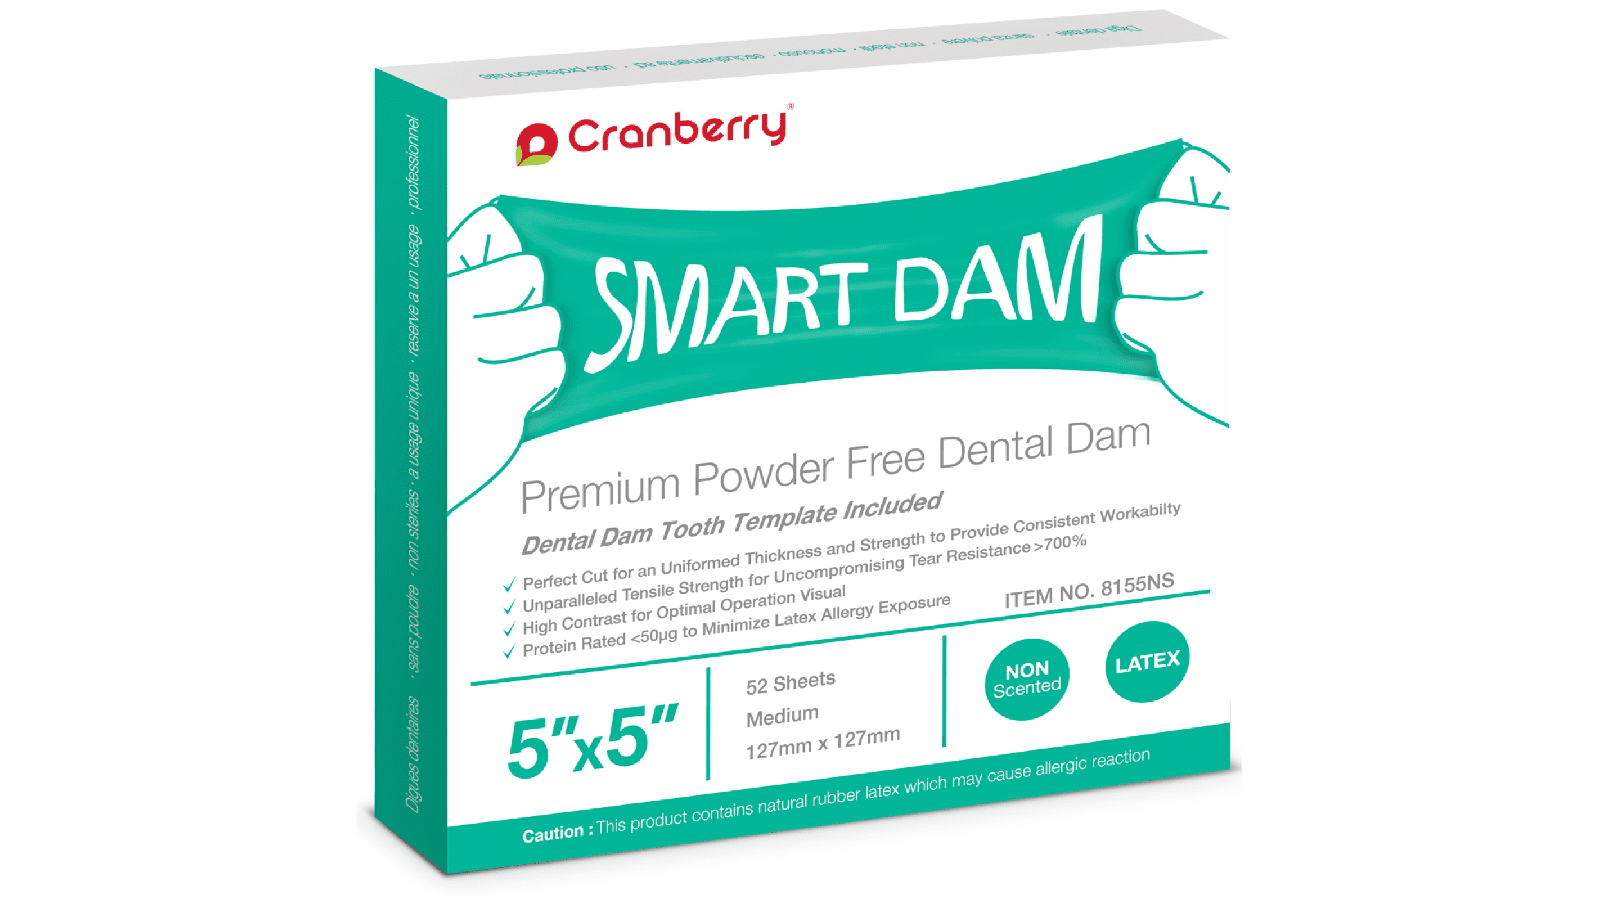 Cranberry smart dam